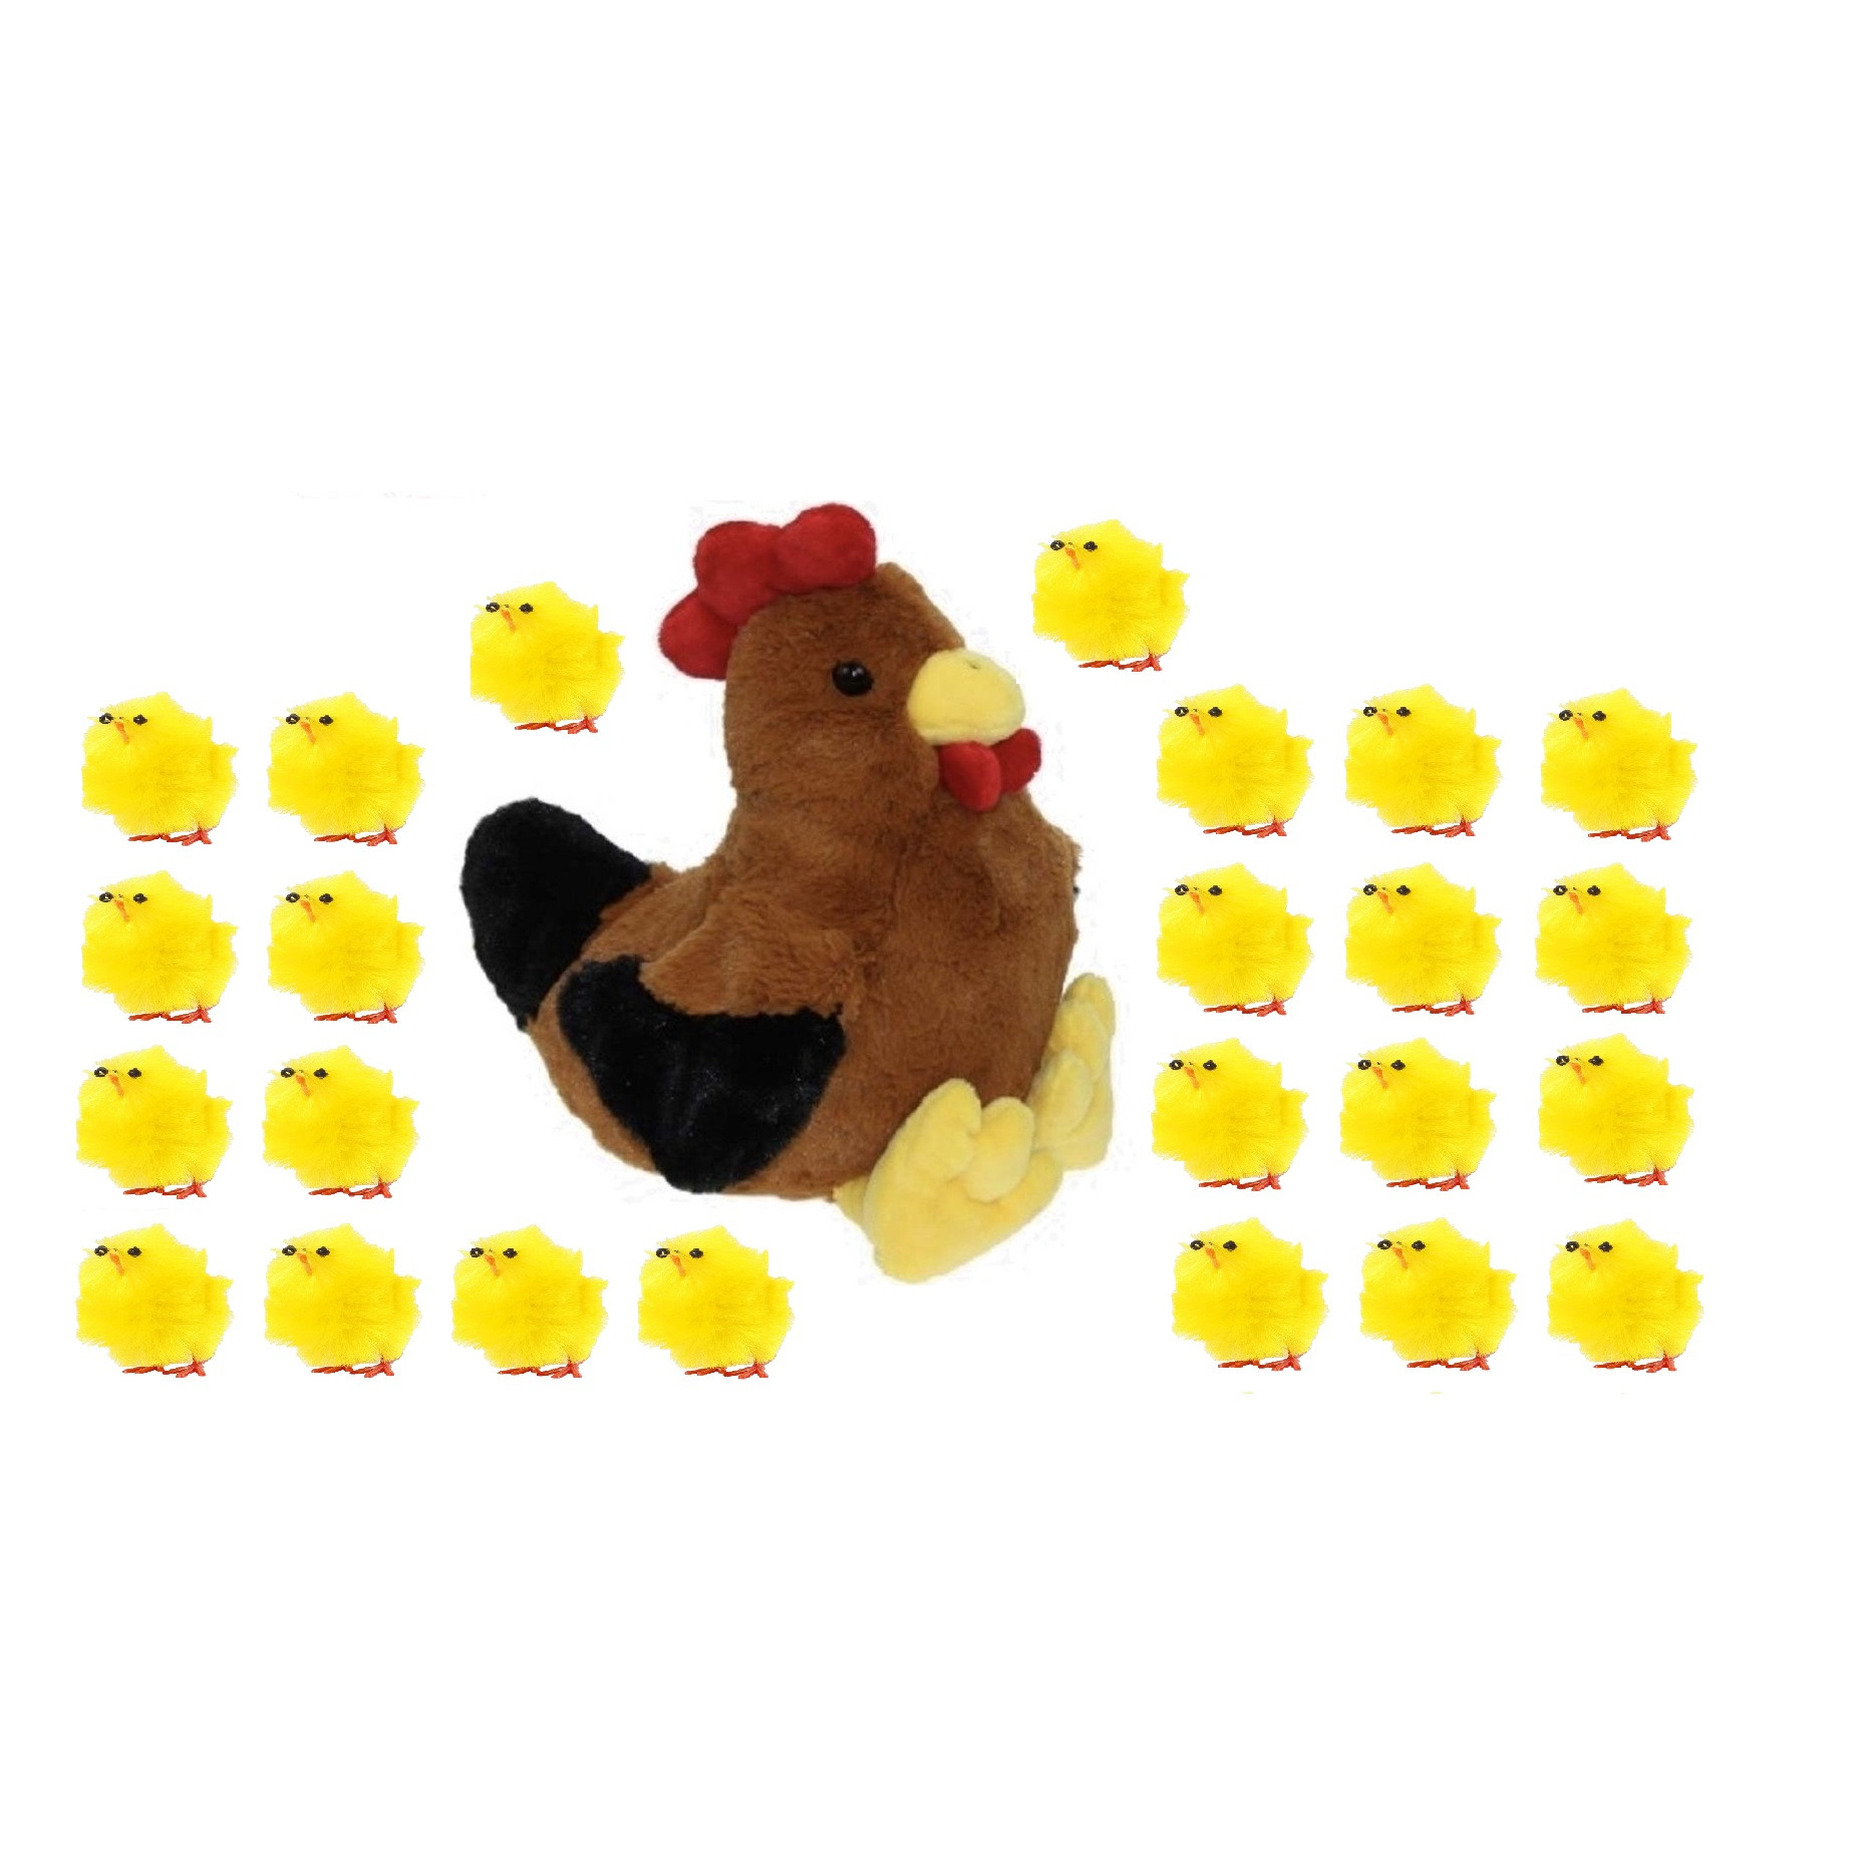 Pluche bruine kippen-hanen knuffel van 25 cm met 24x stuks mini kuikentjes 3 cm